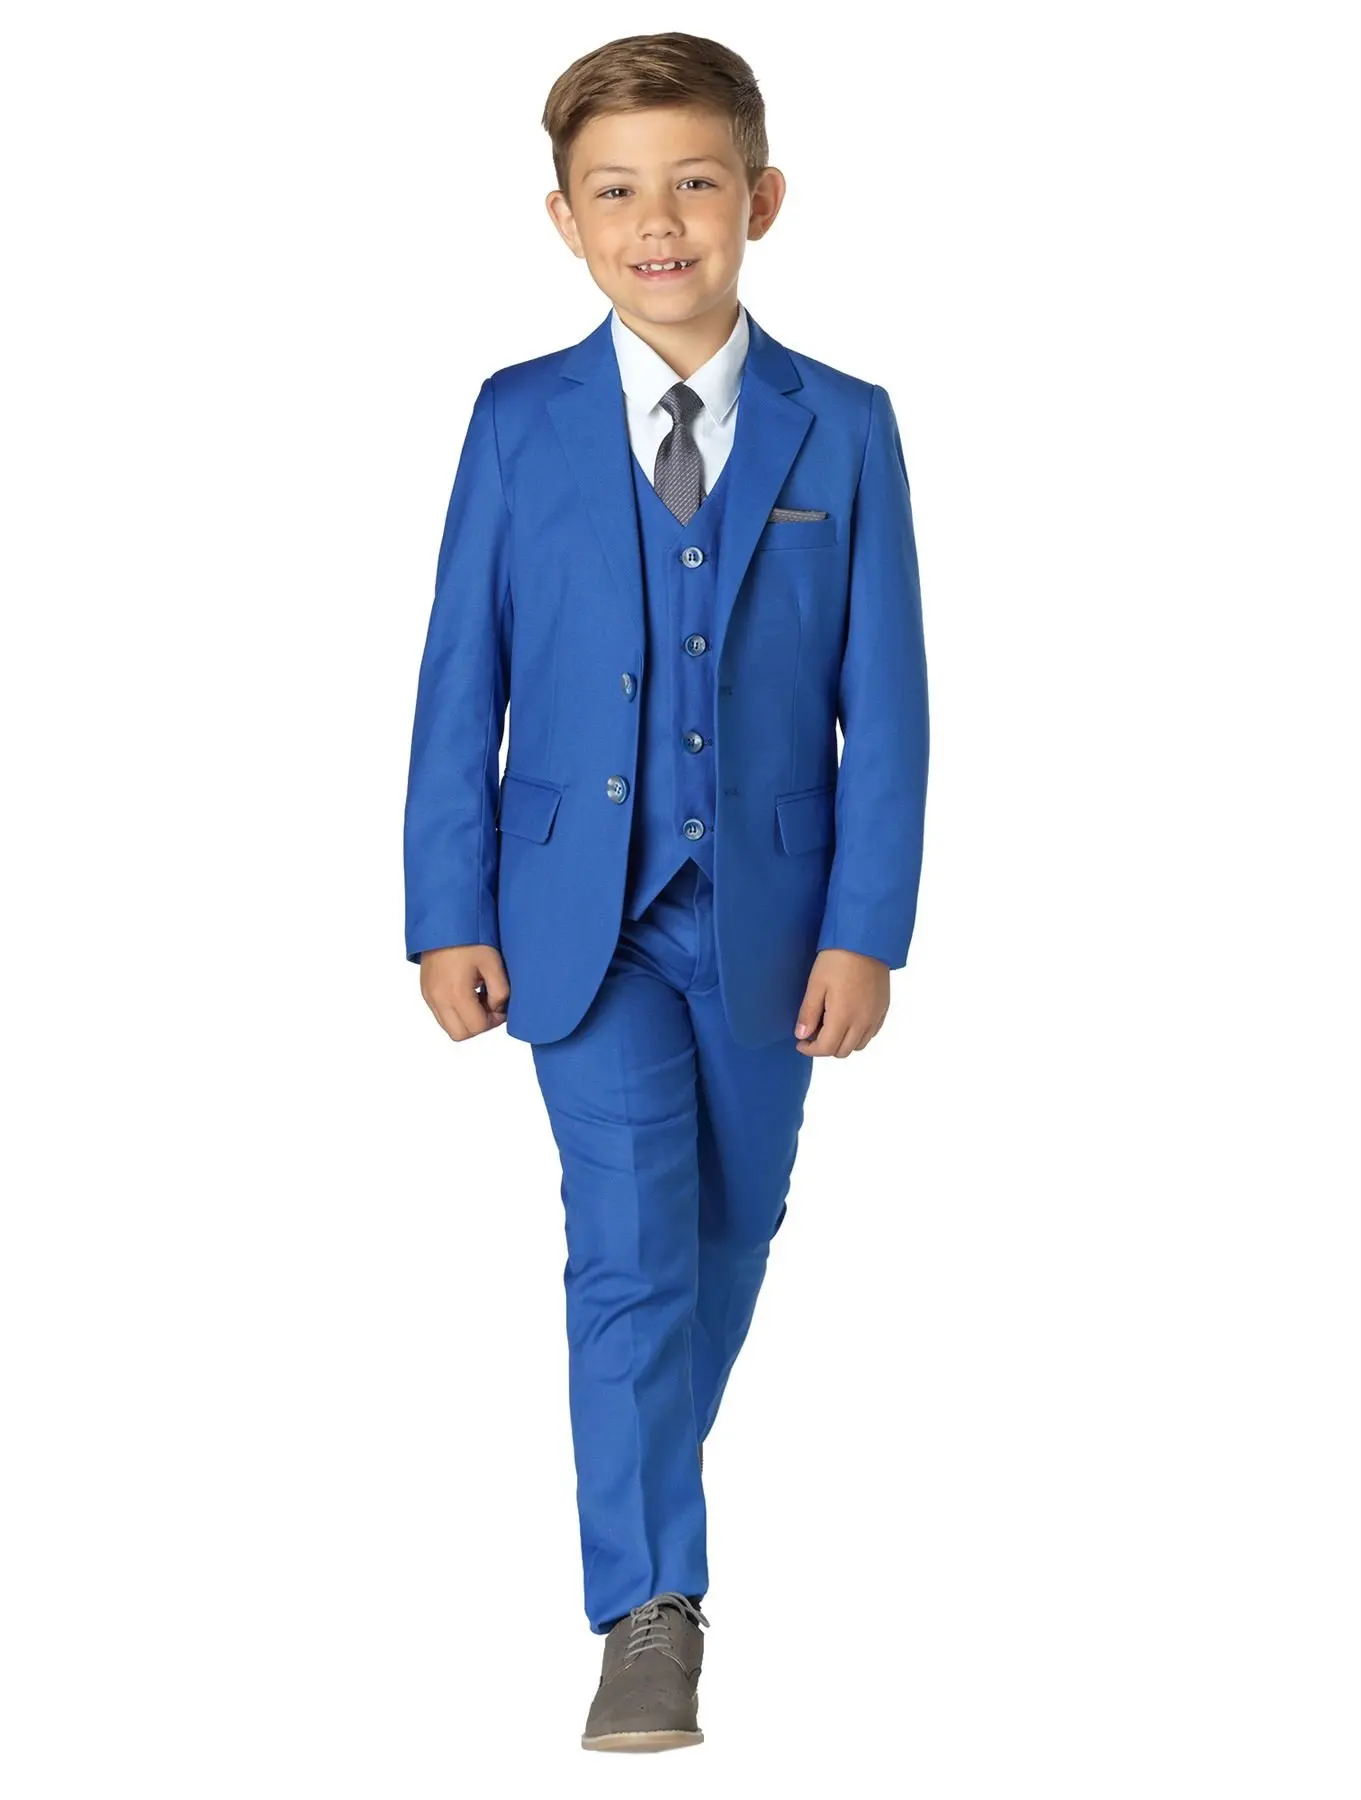 Мальчик в синем костюме